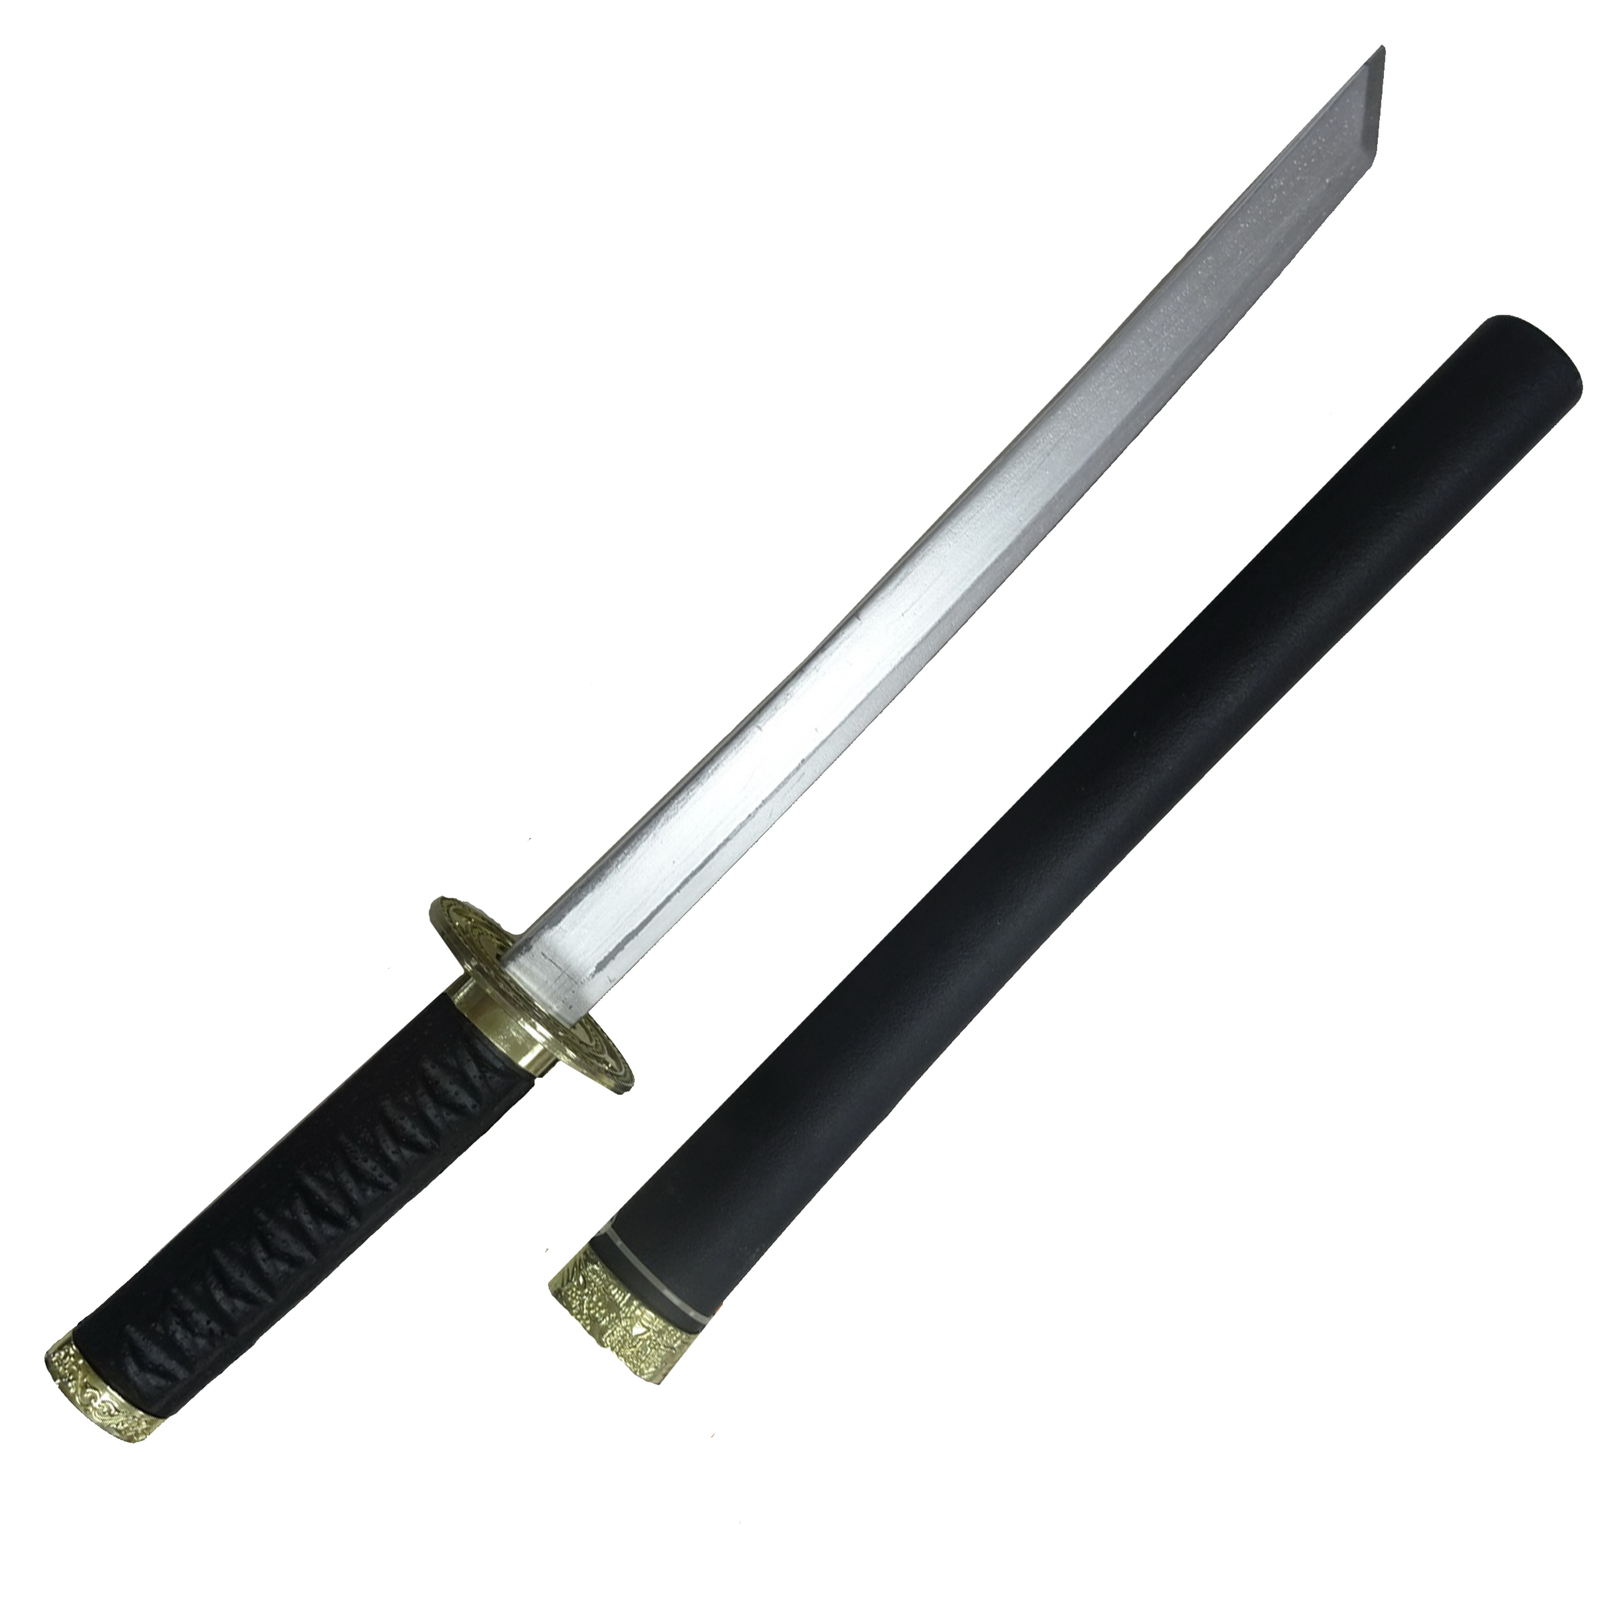 Japanese Katana Sword 22